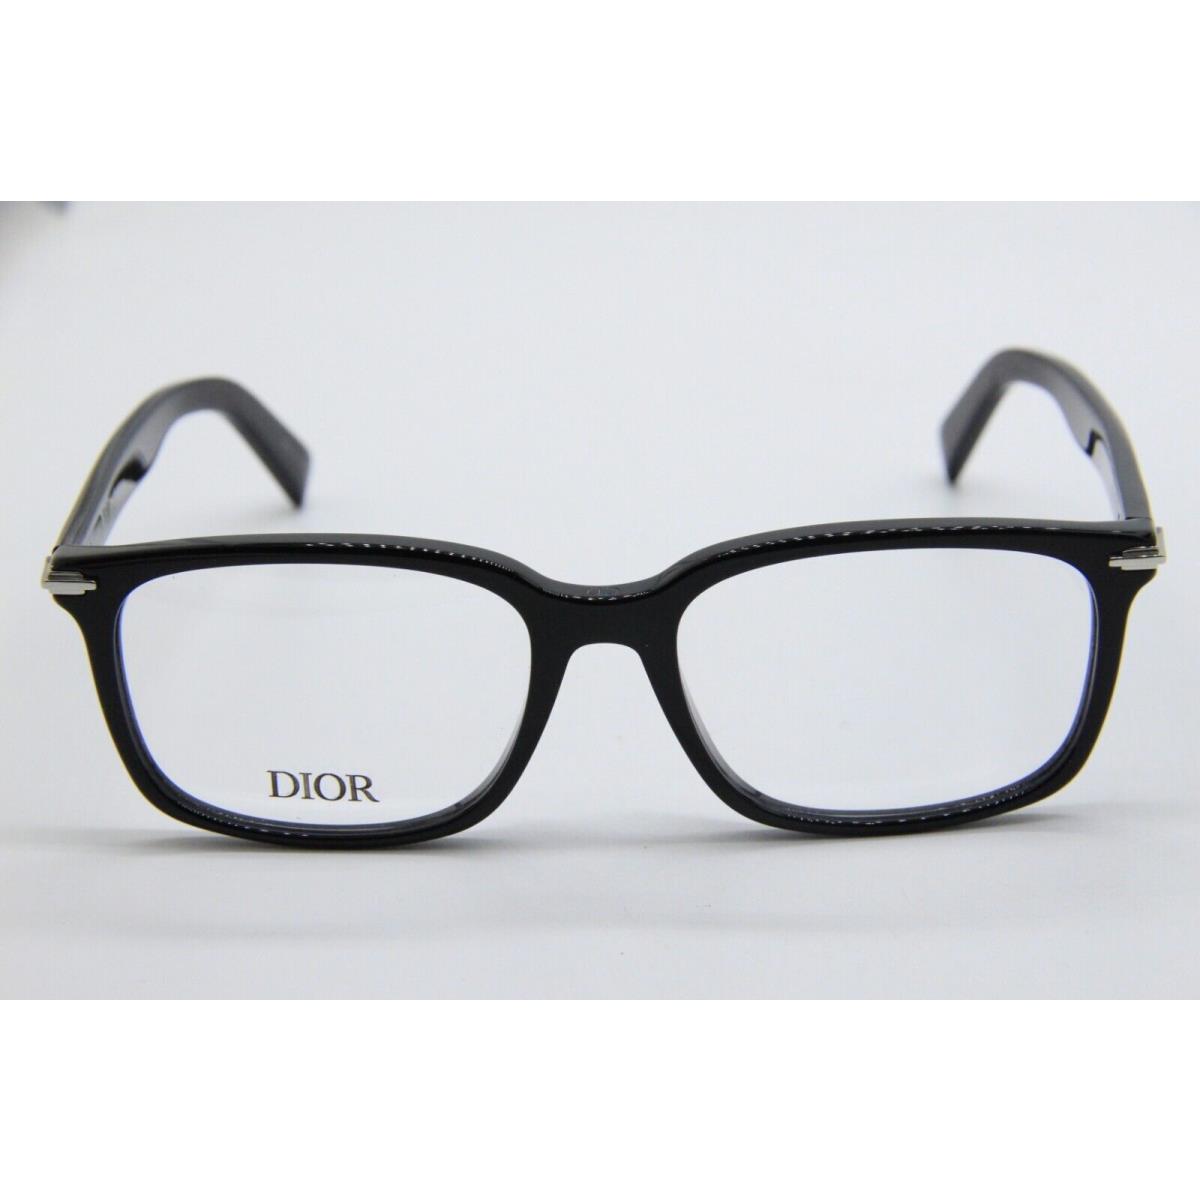 Dior eyeglasses  - Black Frame